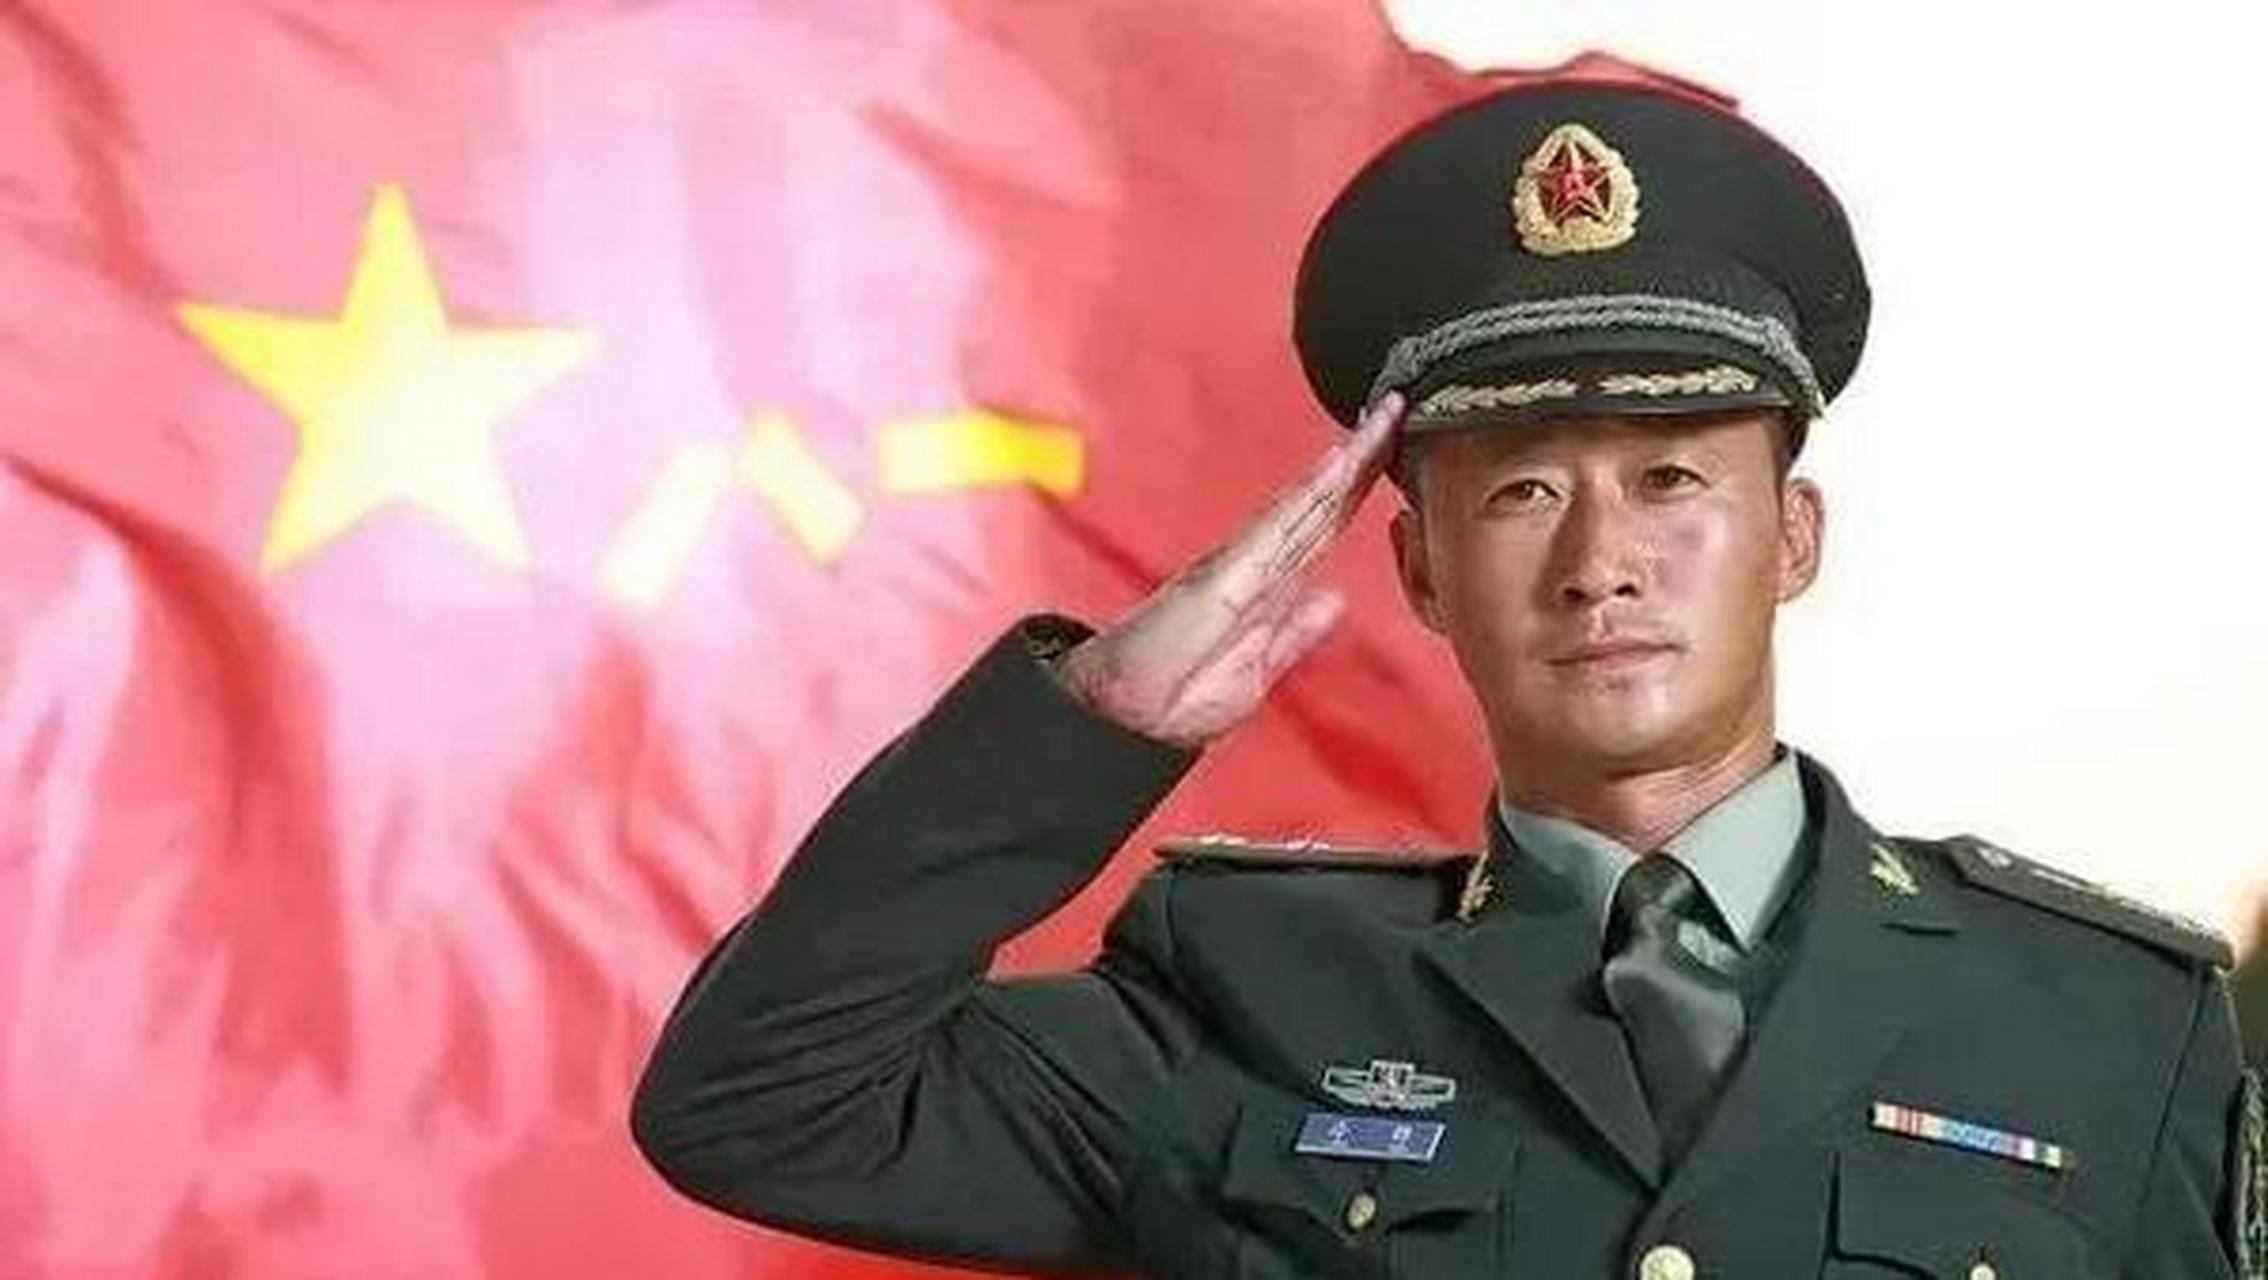 近日,中国著名演员吴京在社交媒体上晒出了一张自己穿着军装的照片